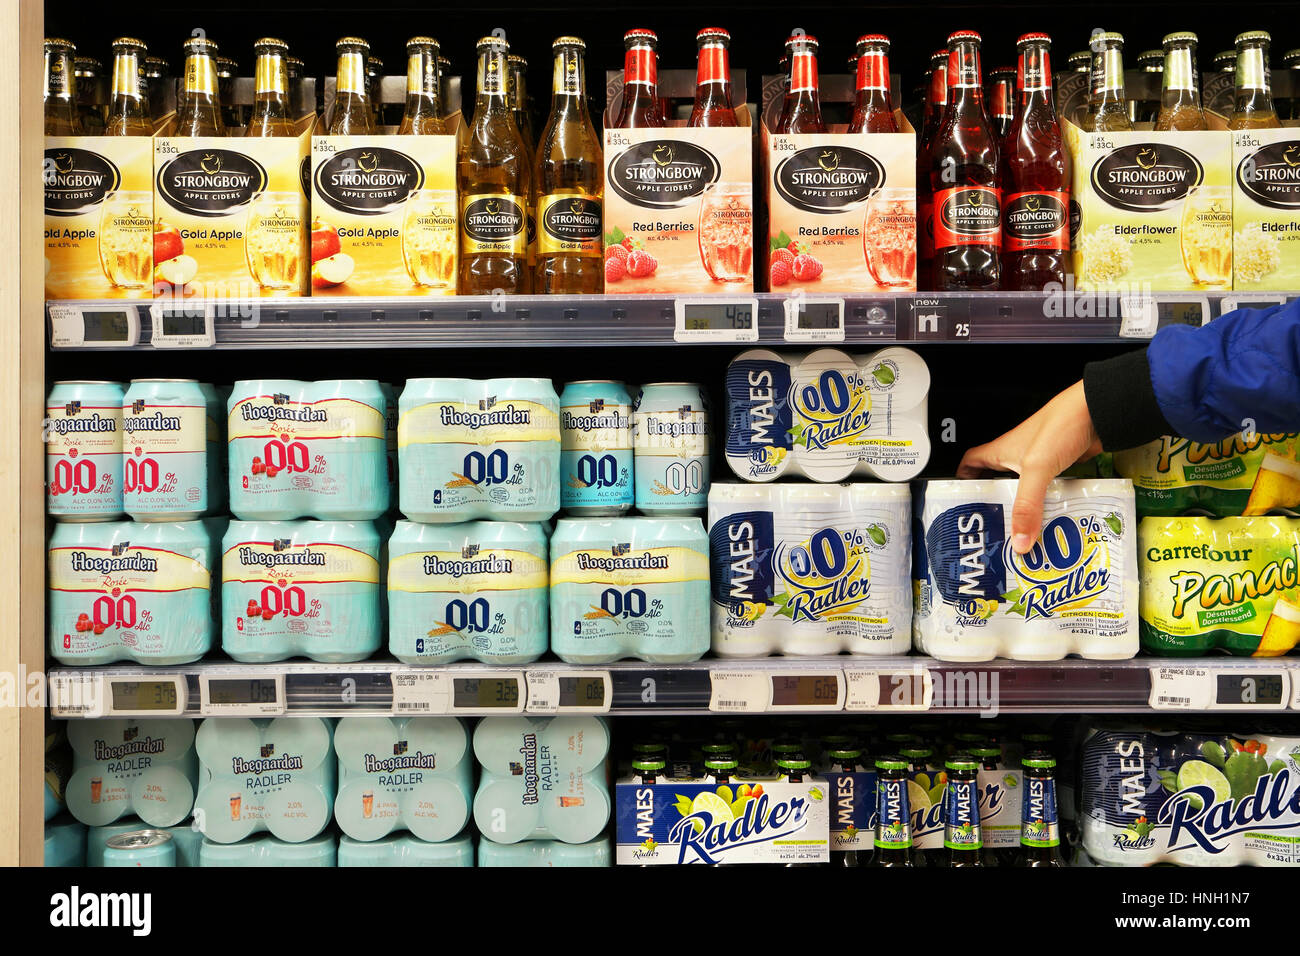 0.0 Hoegaarden assortiment de bières et cidres apple Strongbow dans un supermarché Banque D'Images